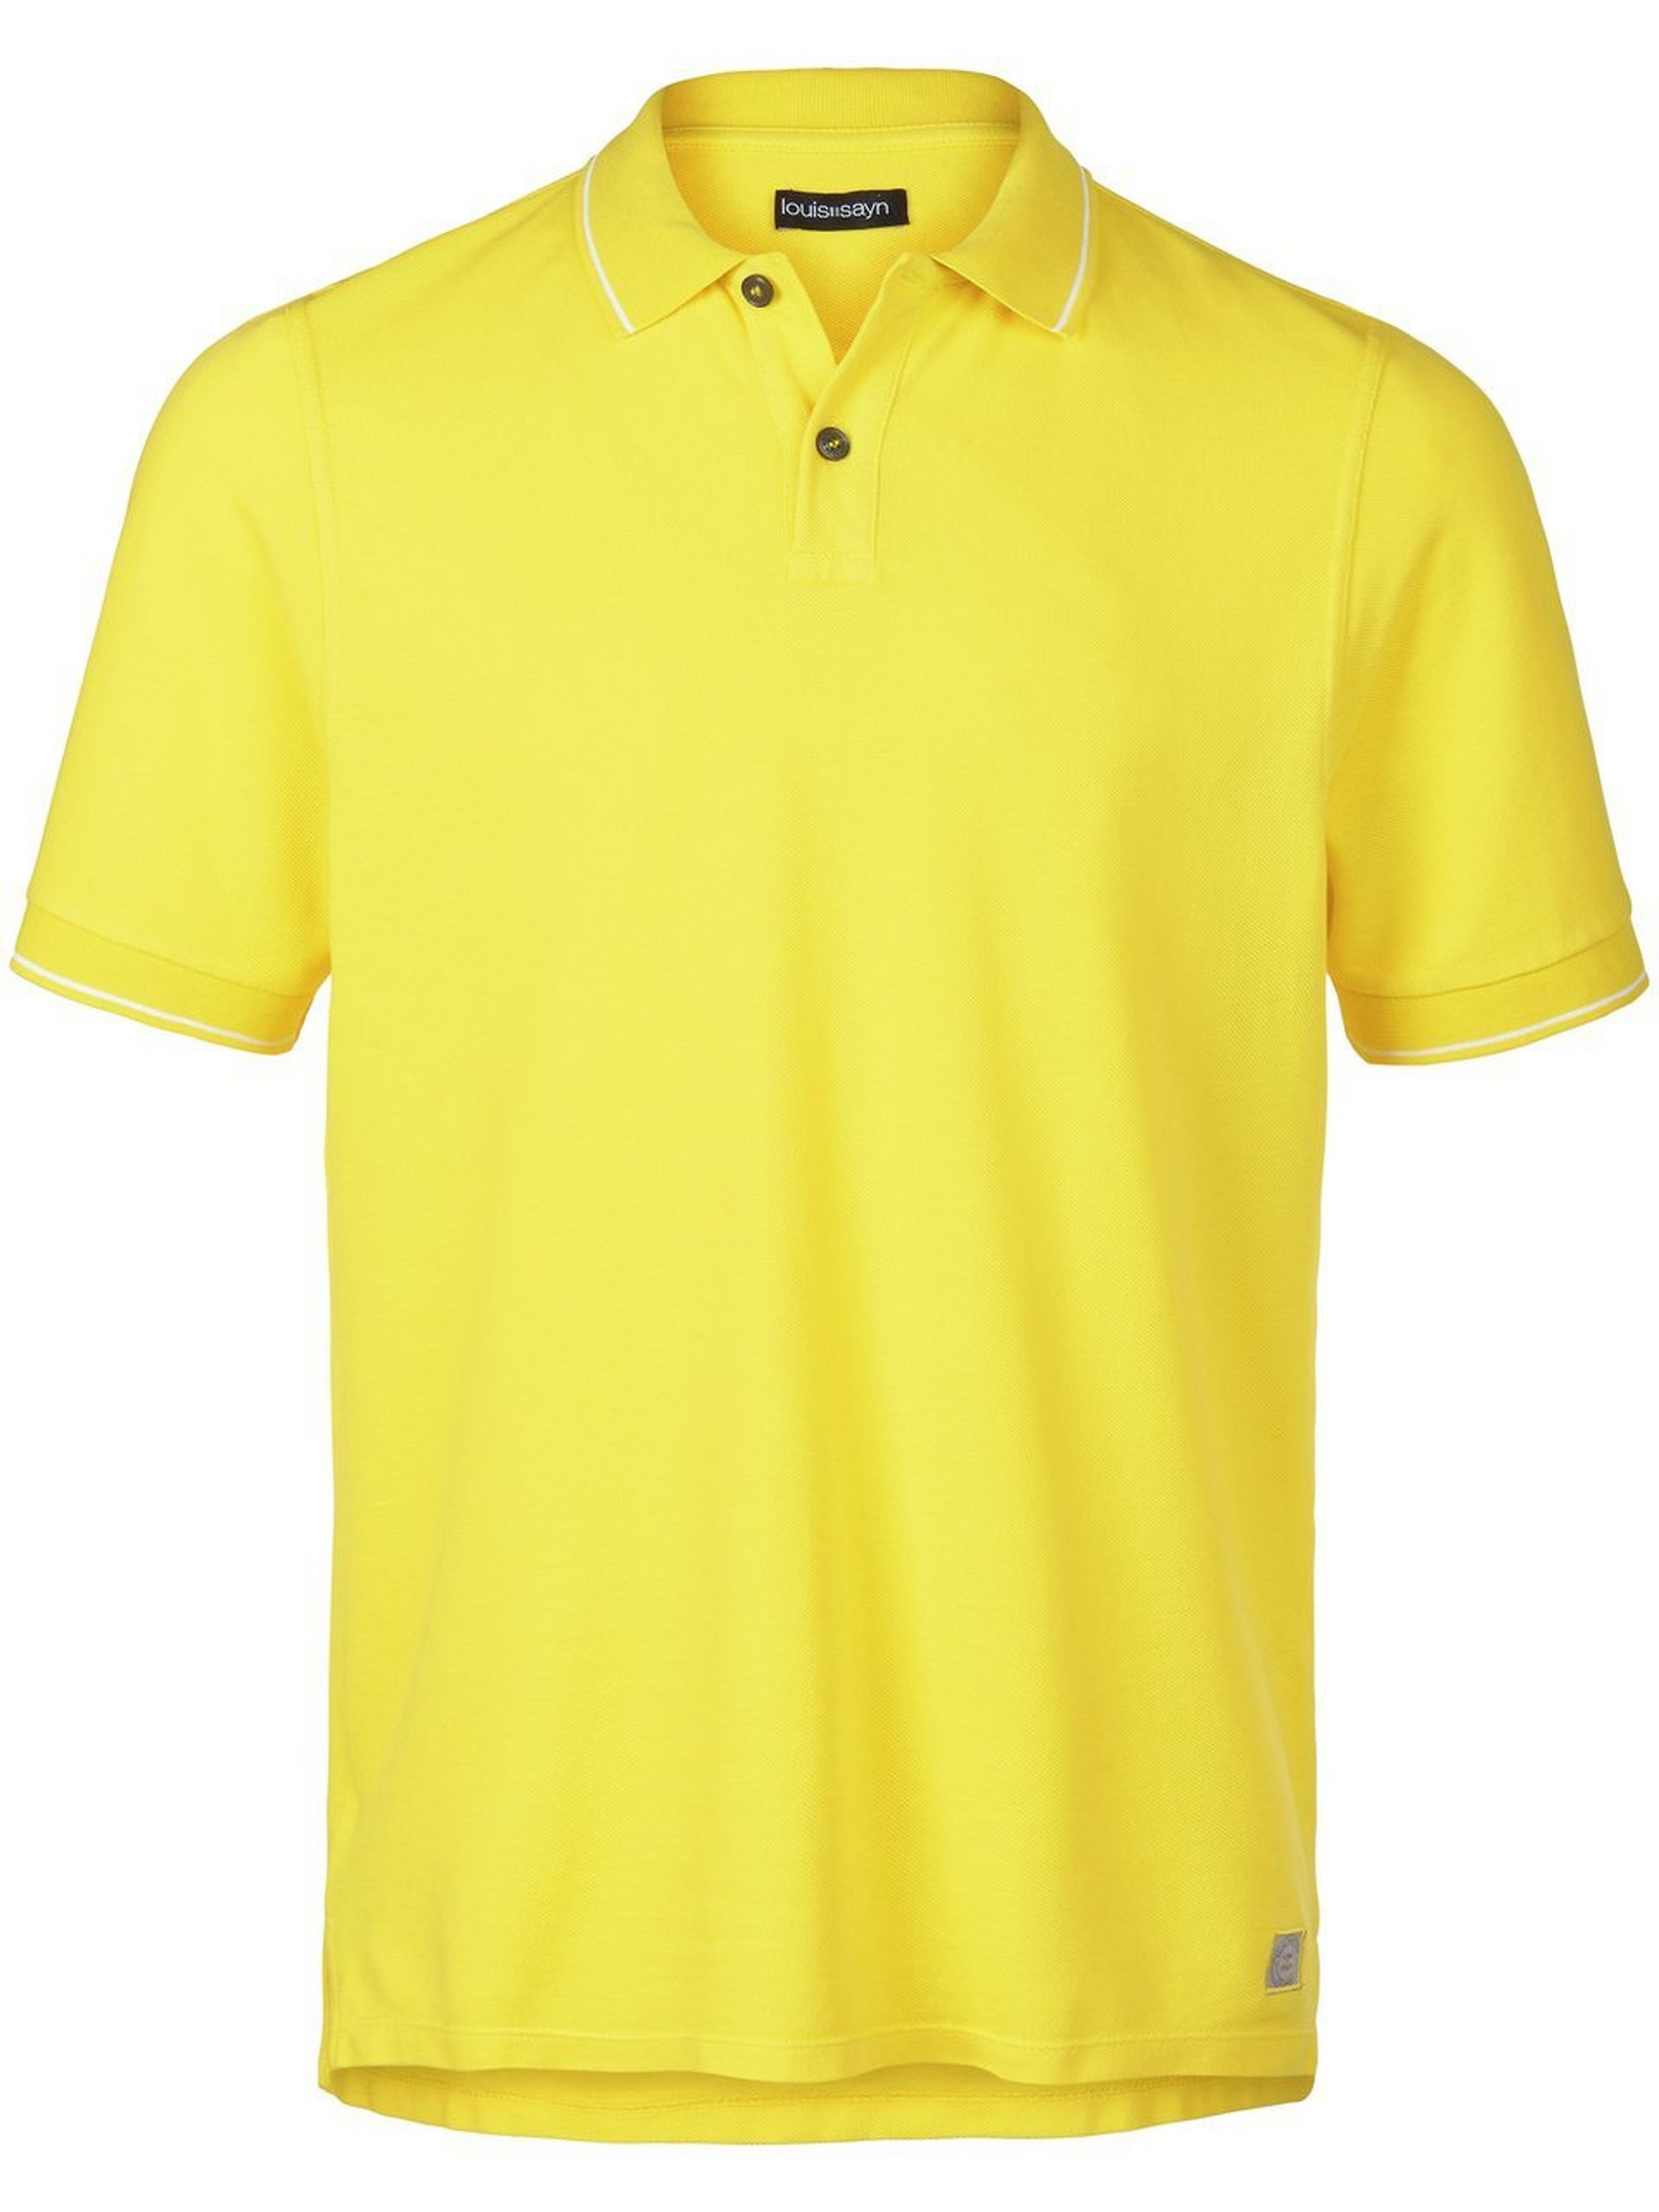 Piqué-Polo-Shirt 1/2-Arm Louis Sayn gelb